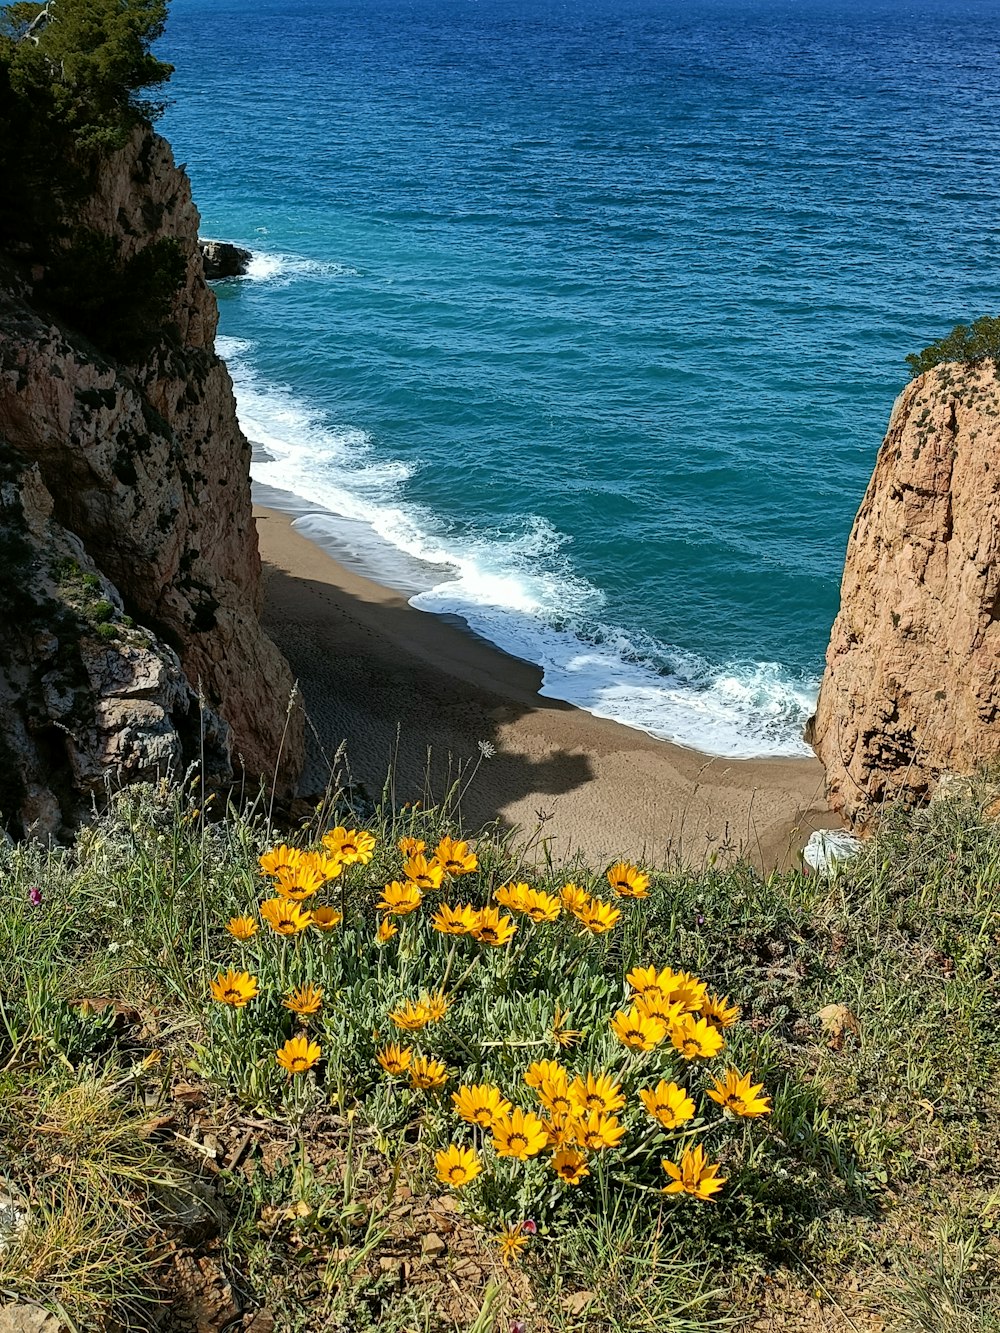 quelques fleurs jaunes de l’eau et des rochers